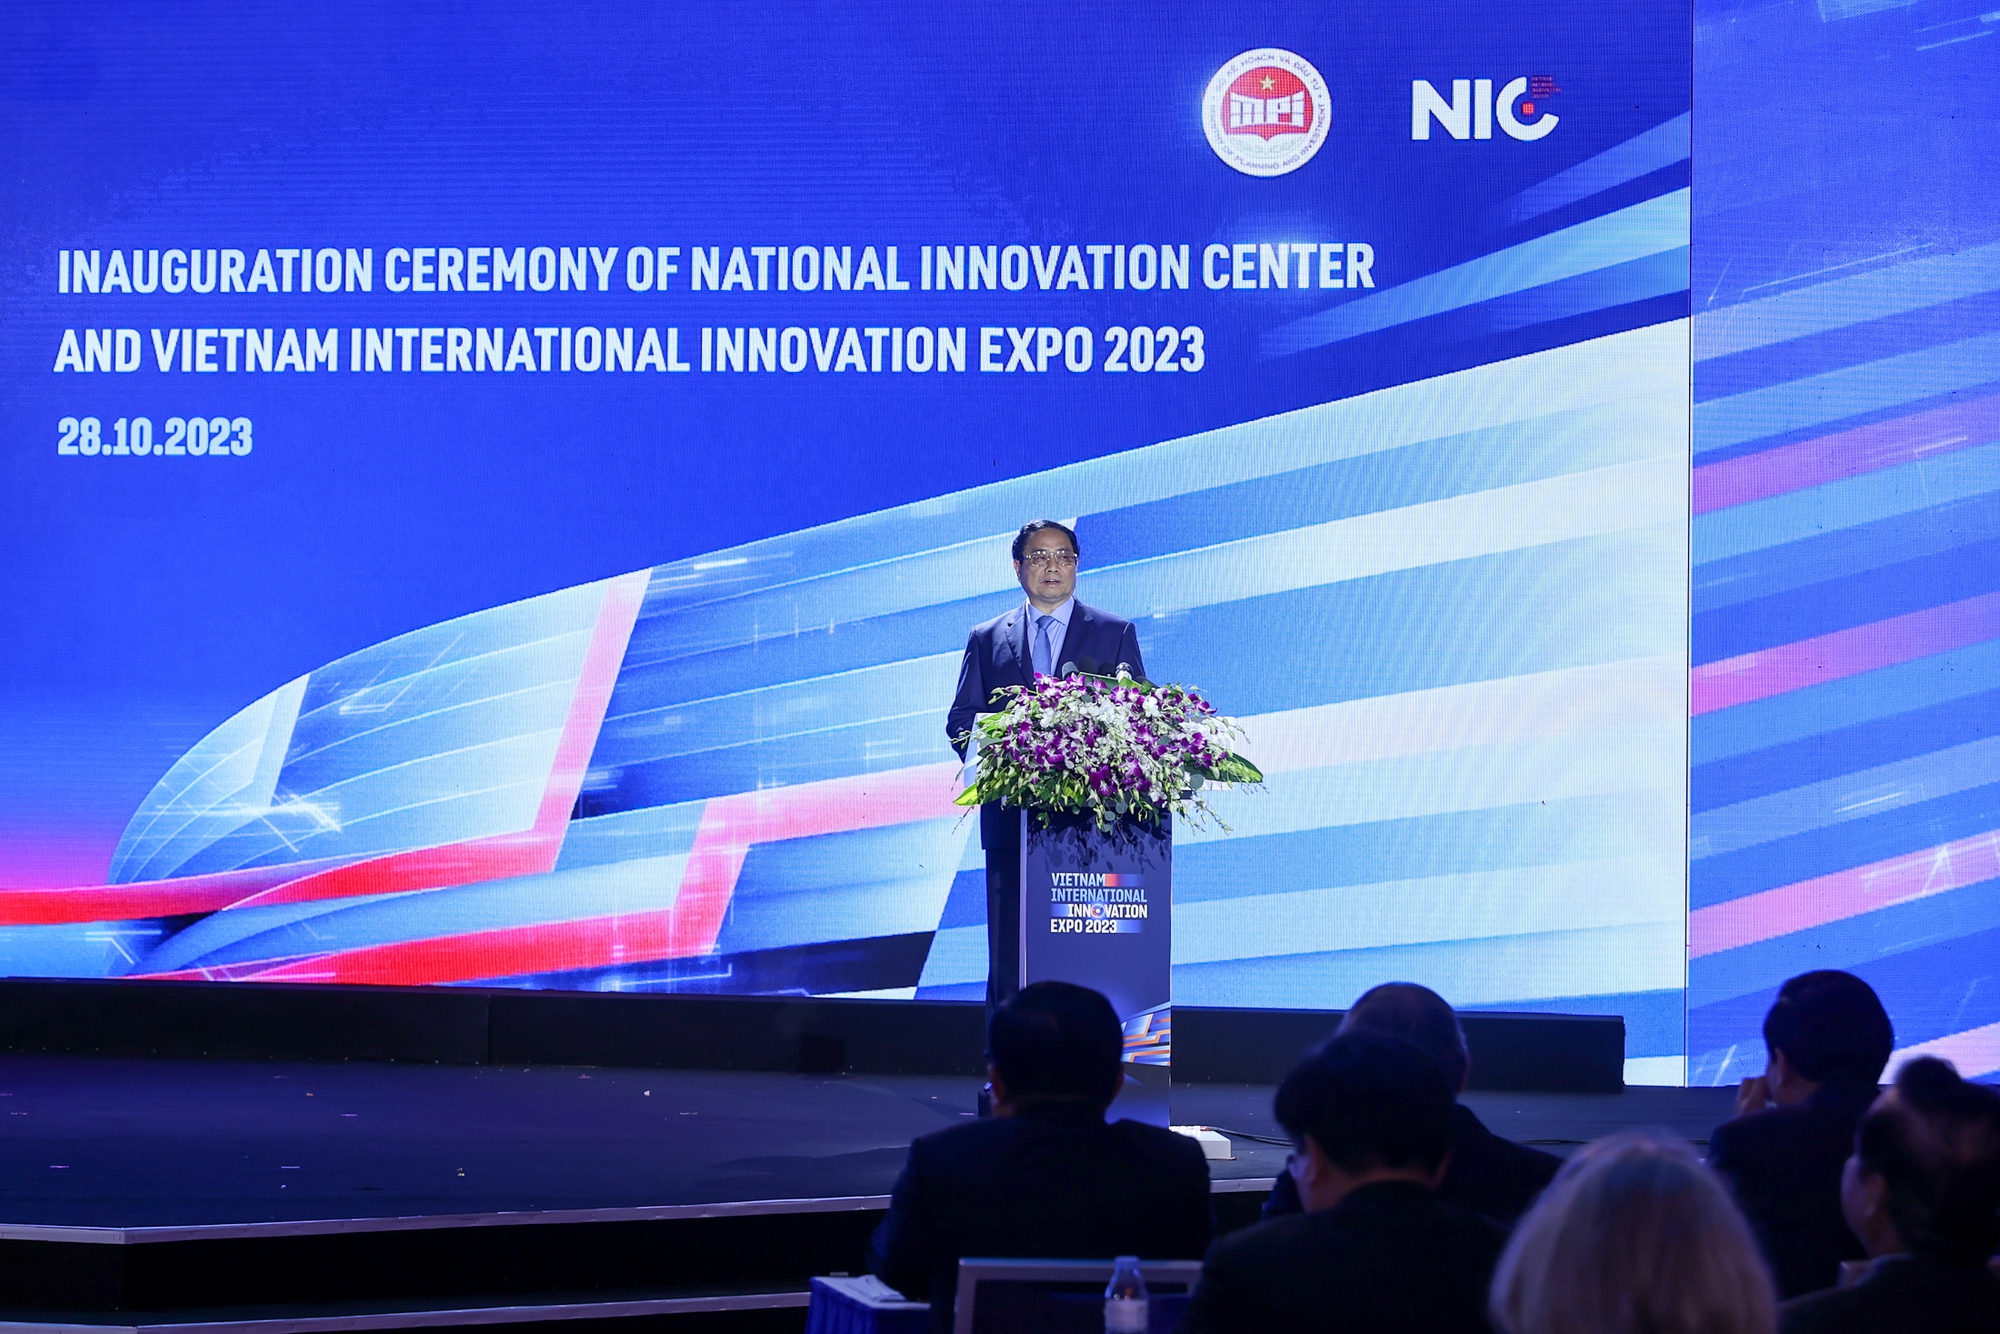 Thủ tướng Phạm Minh Chính: Chúng ta không thể không băn khoăn, trăn trở và có trách nhiệm khi chỉ tiêu tốc độ tăng năng suất lao động còn chưa cao - Ảnh: VGP/Nhật Bắc